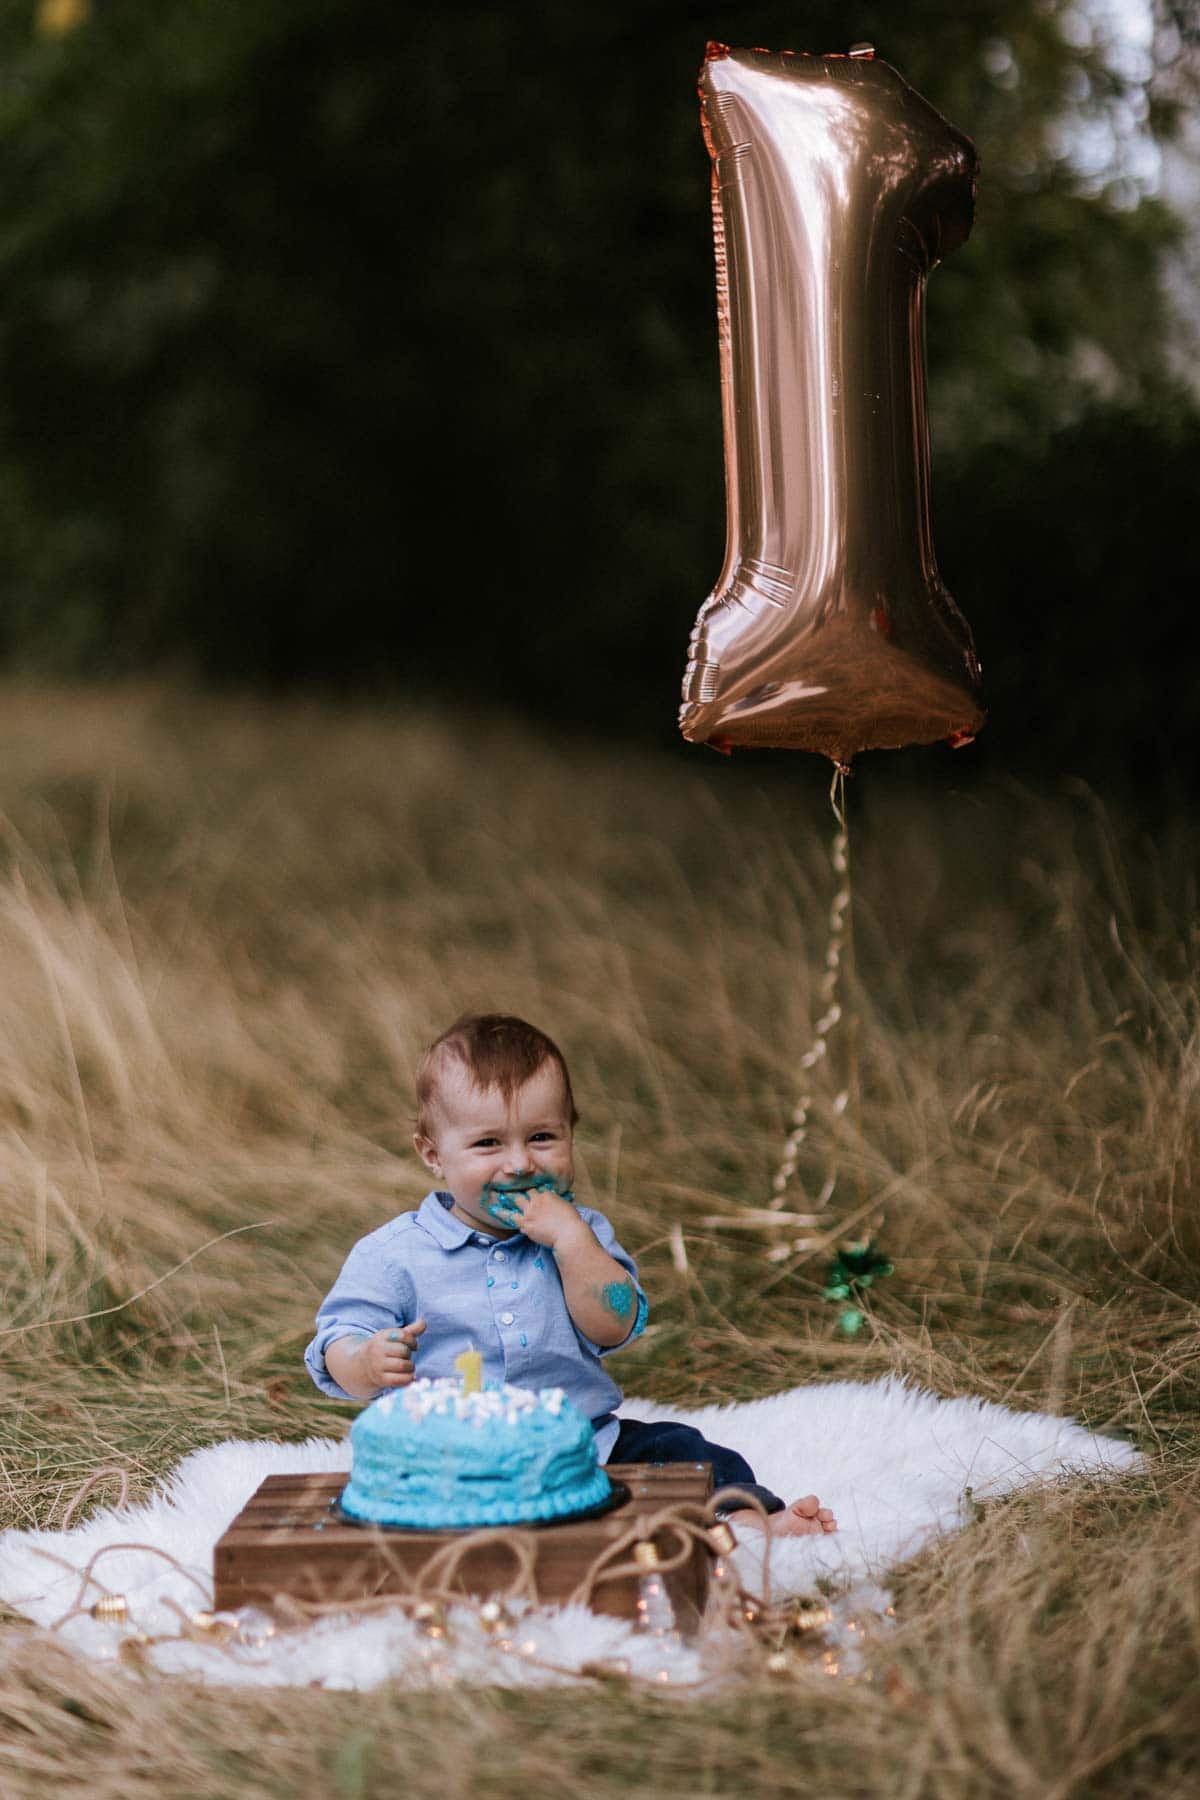 junge beim cakesmash fotoshoot sitzt vor seiner torte und im hintergrund ist ein großer ballon in form einer eins zu sehen